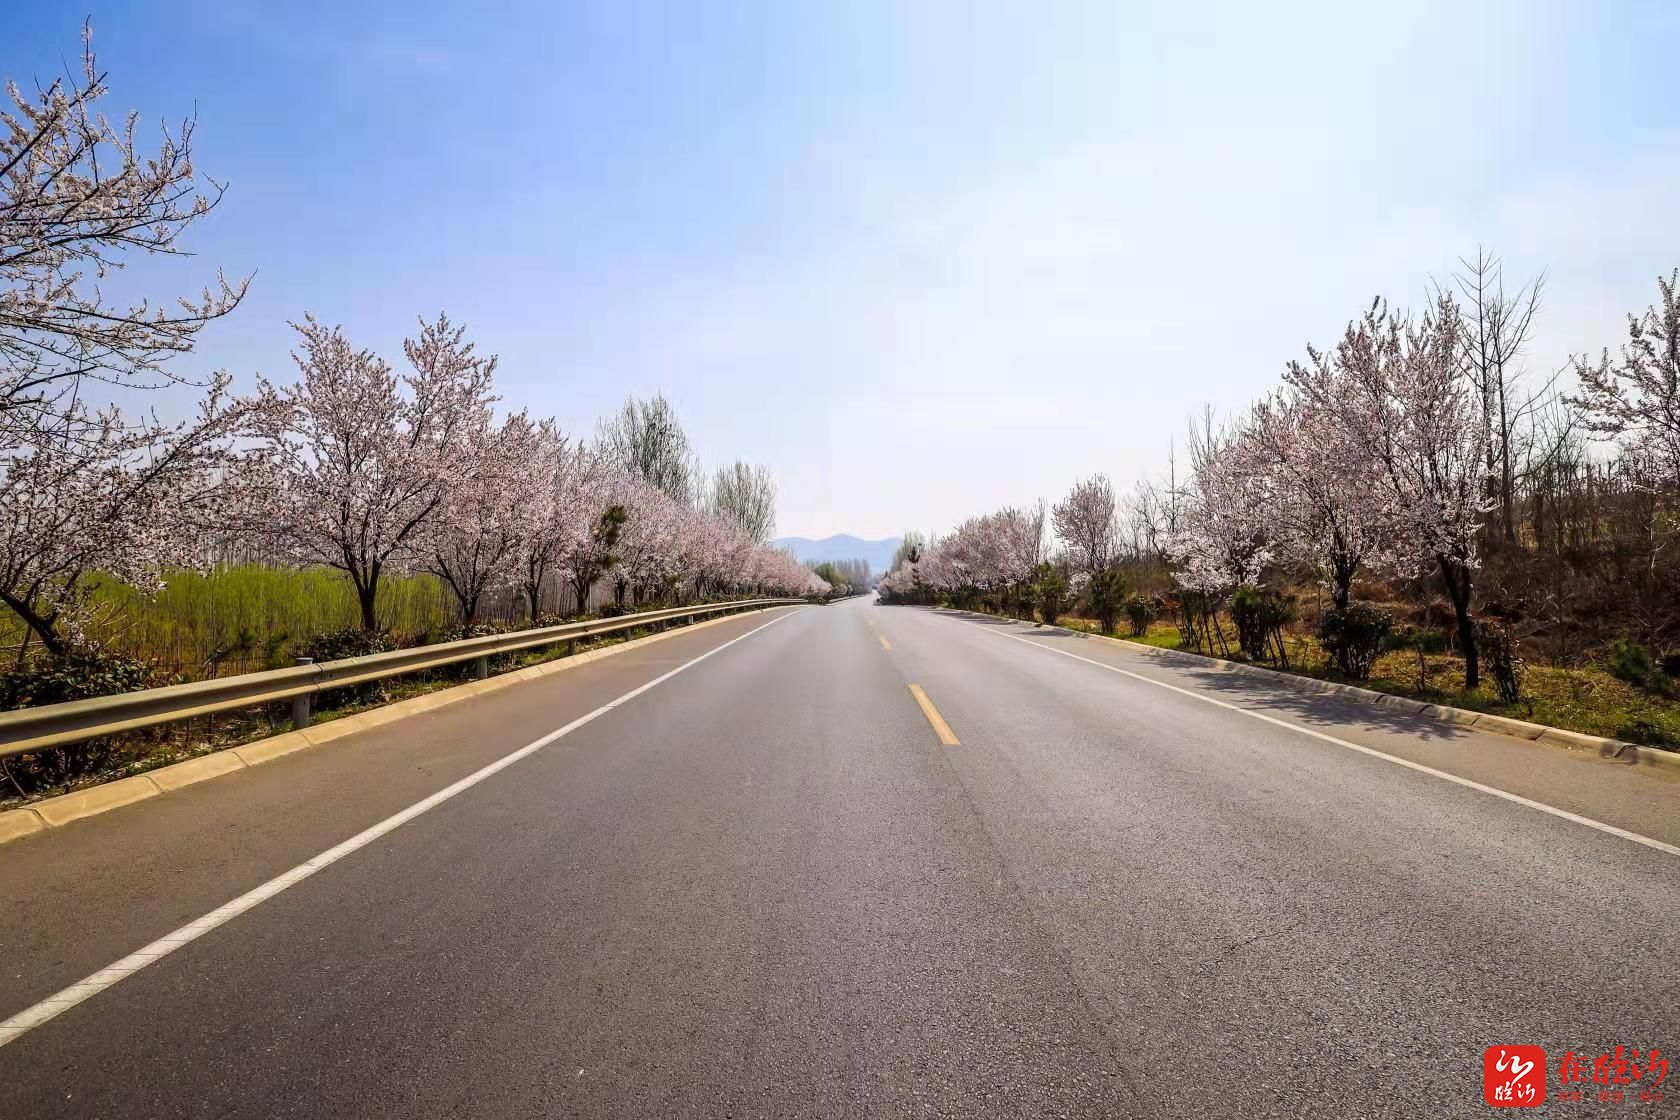 连日来,行驶在临沂市国省道干线公路上,紫叶李,桃花等竞相绽放,处处